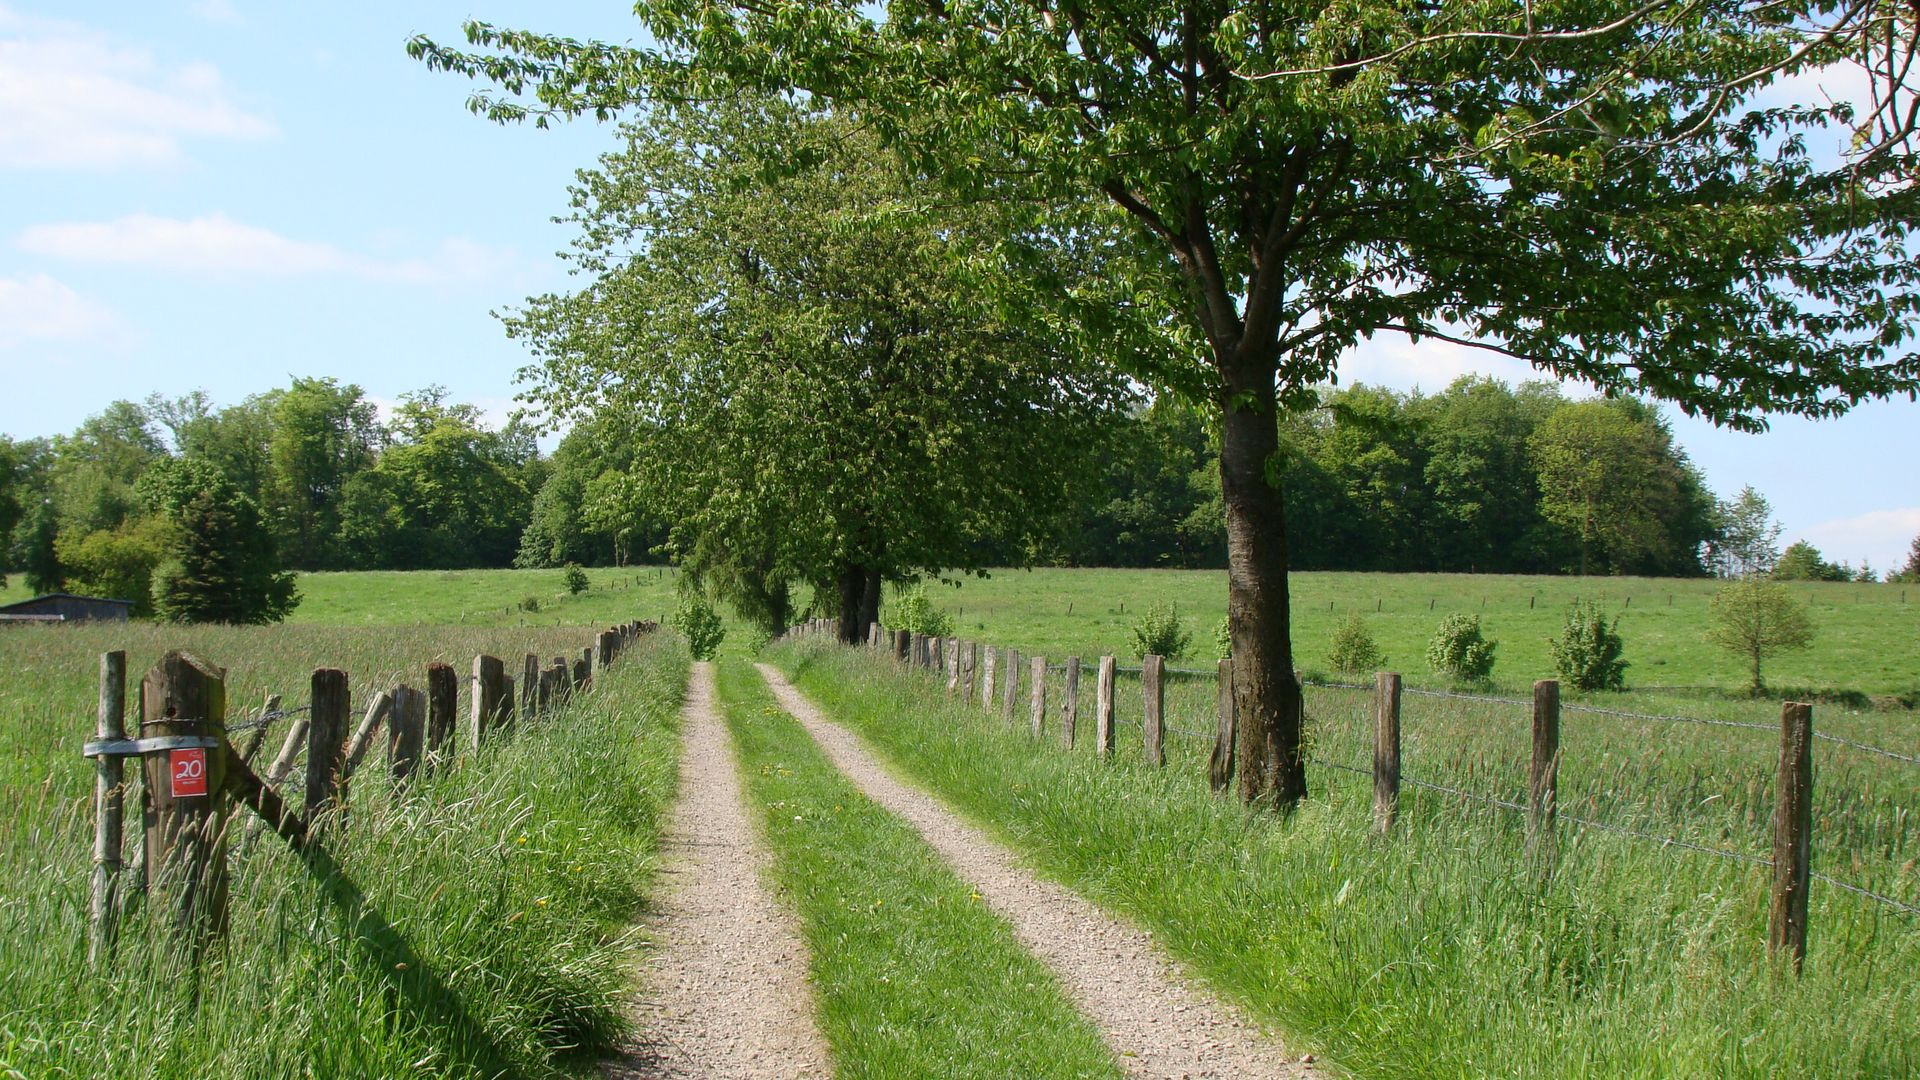 Ein Wanderweg durch grüne Felder bei blauem Himmel. Rechts steht ein grüner Baum am Wegesrand